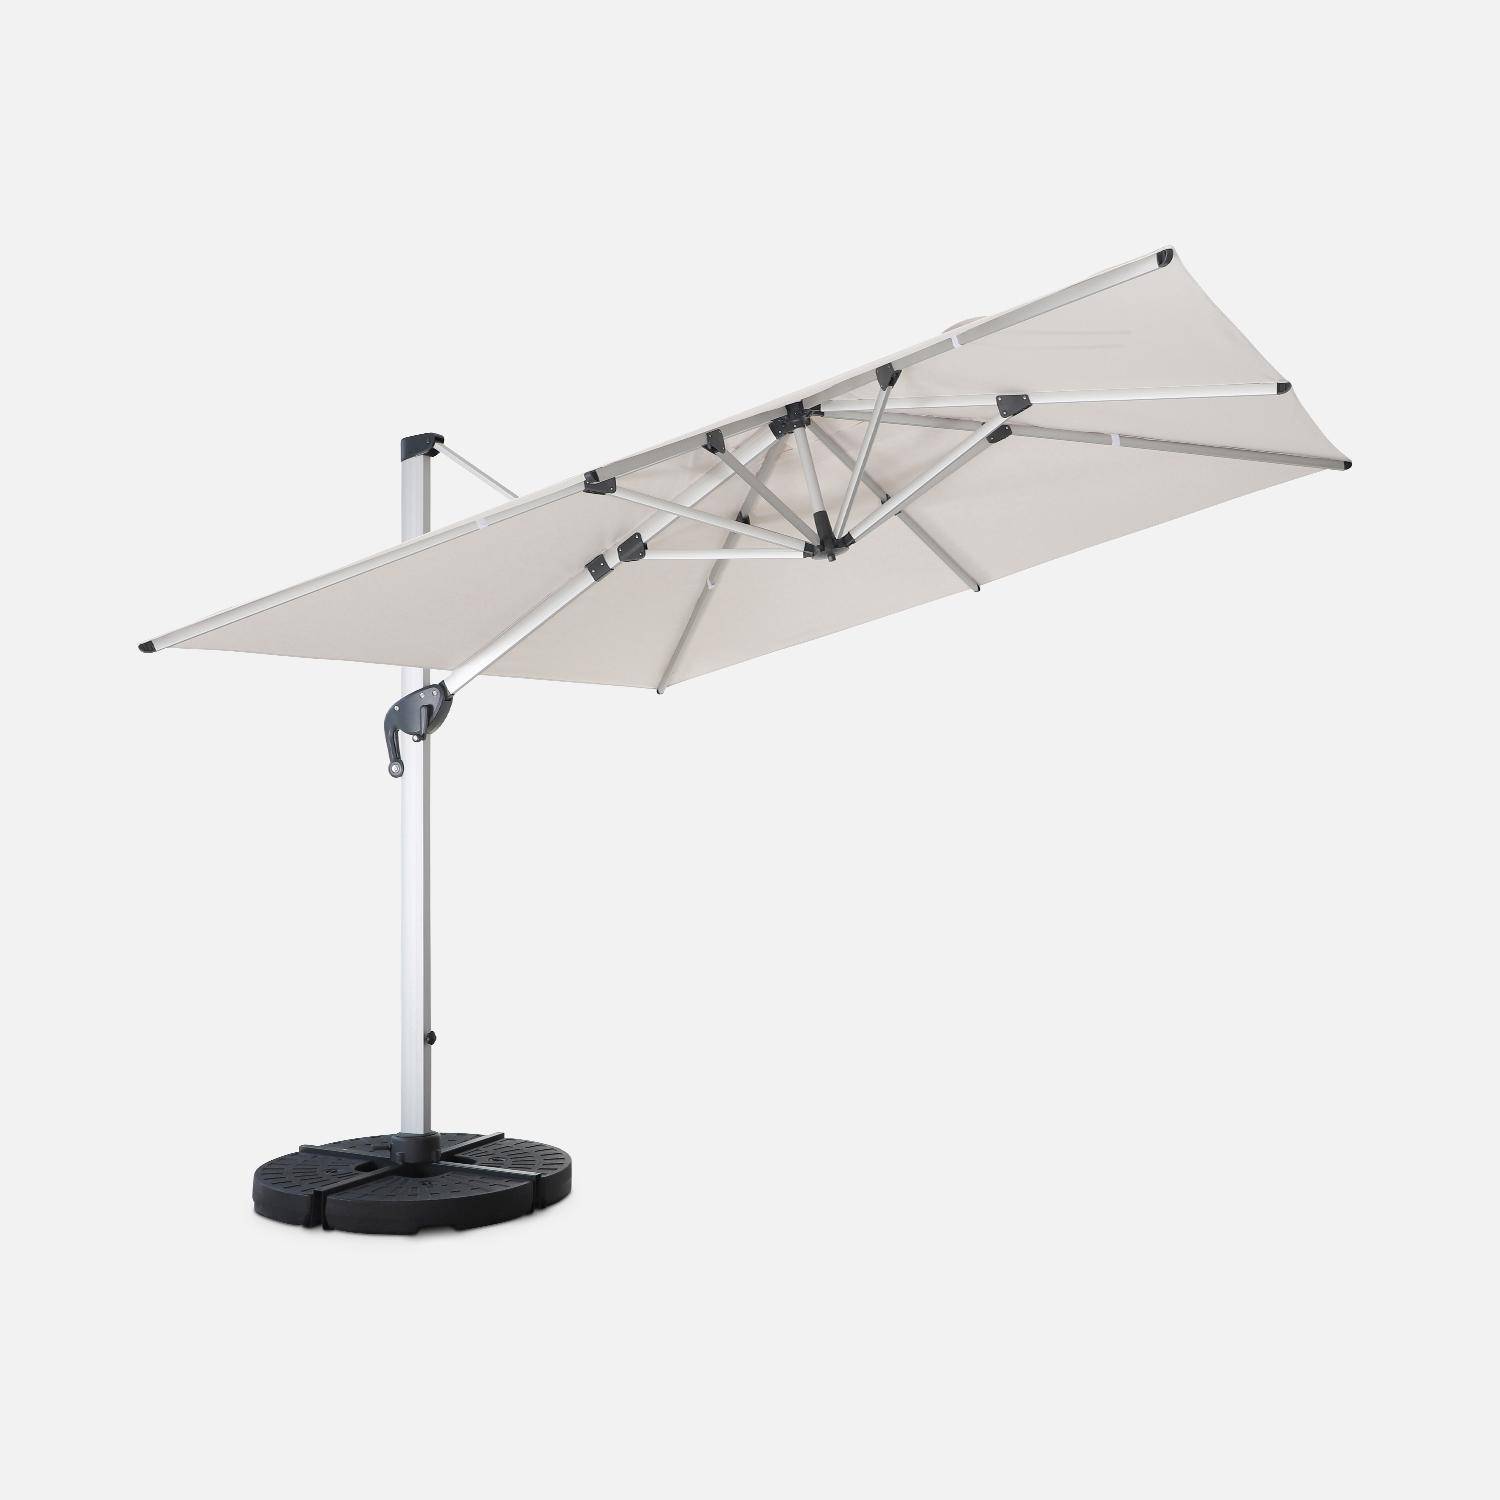 Topkwaliteit parasol, 3x3m, beige polyester doek, geanodiseerd aluminium frame, hoes inbegrepen,sweeek,Photo3